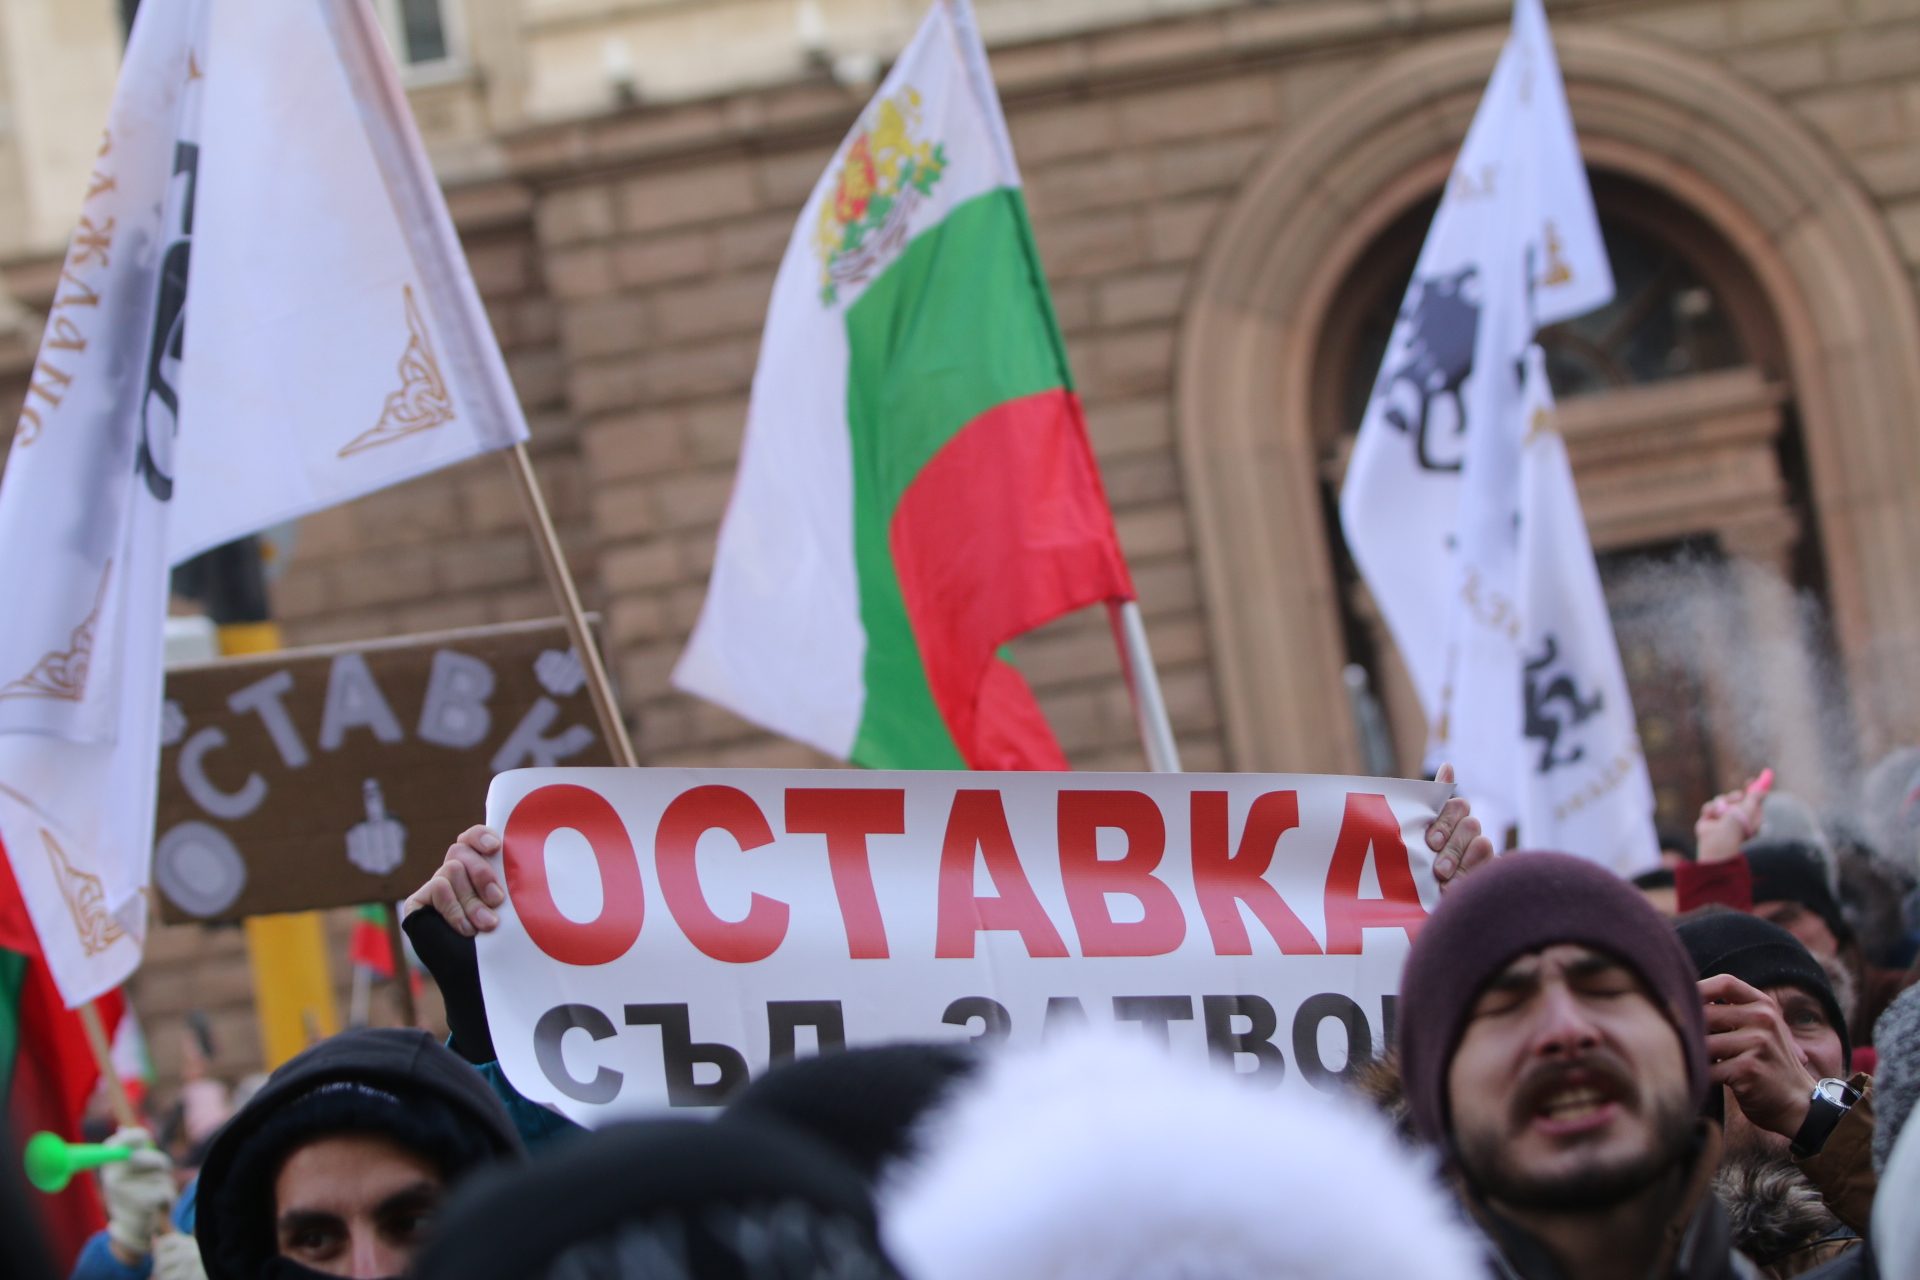 Лидерът на движението Костадин Костадинов заяви, че недоволните са се събрали да изразят недоволството срещу управляващите, които "отровили въздуха, откраднаха водите, продадоха златото и изгониха бъдещето на България".